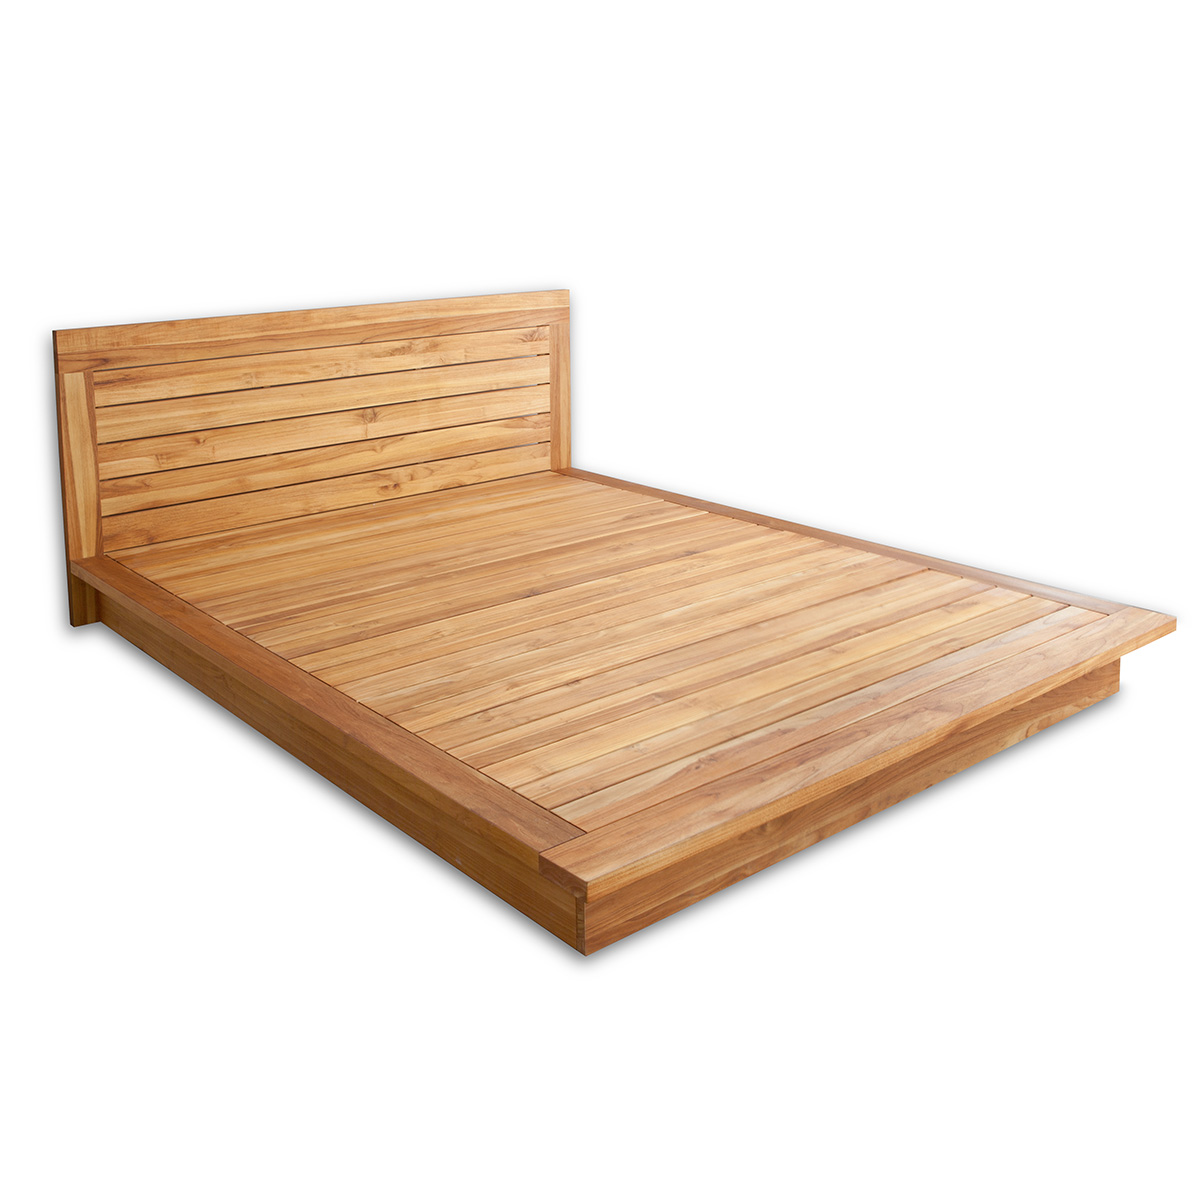 Pch Series Platform Bed, Solid Platform Bed Frame